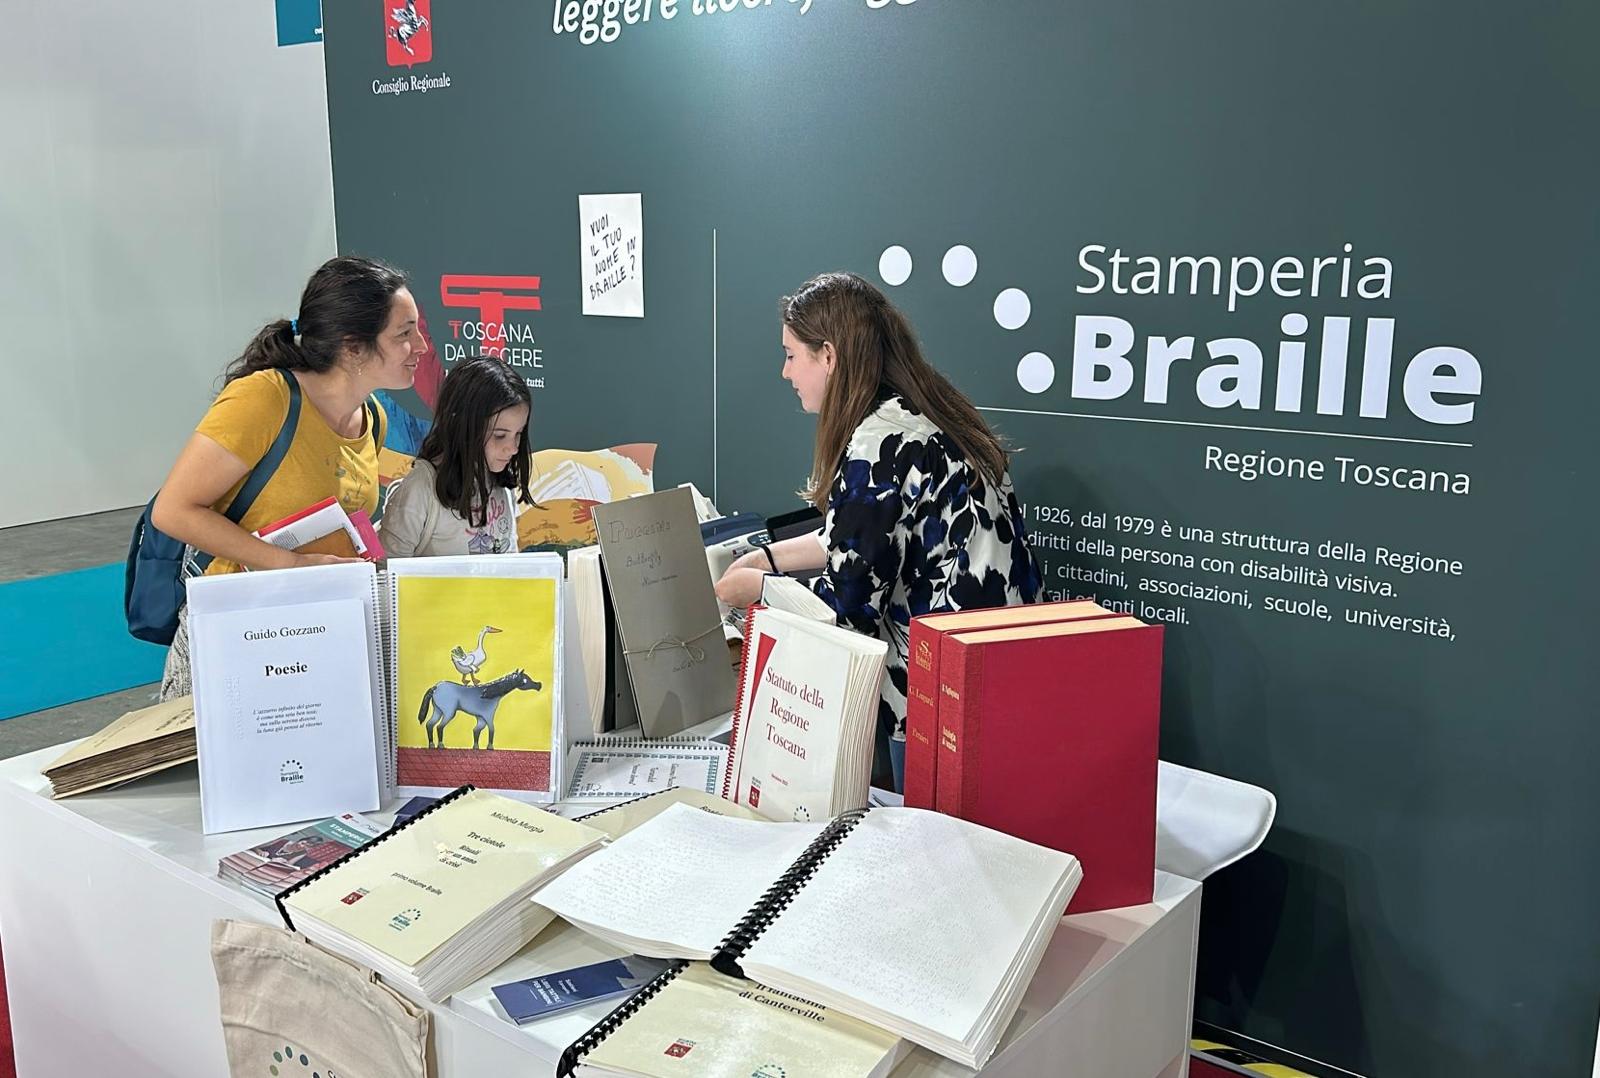 Salone del libro di Torino: la Stamperia Braille presenta le novità in vista del centenario